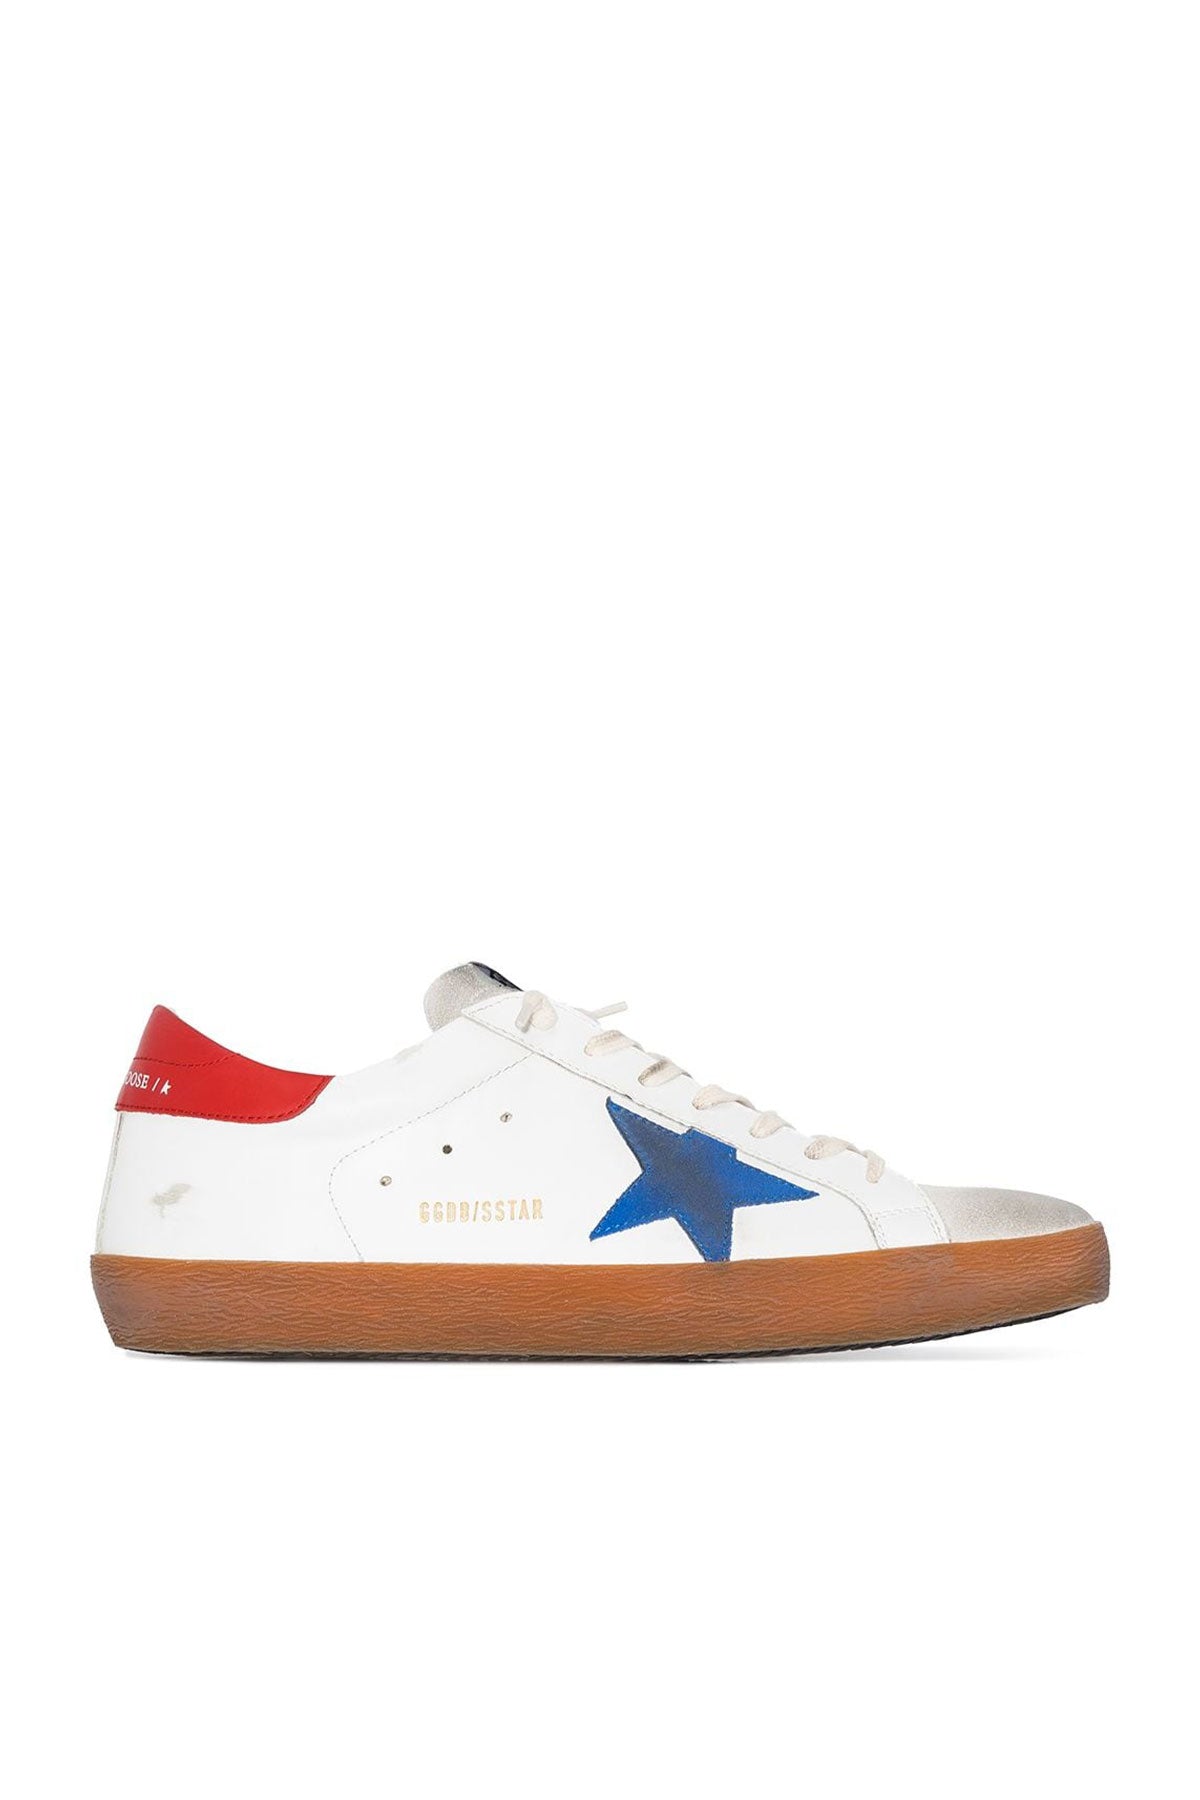 Superstar Red & Blue Star Men Sneaker - shop-olivia.com